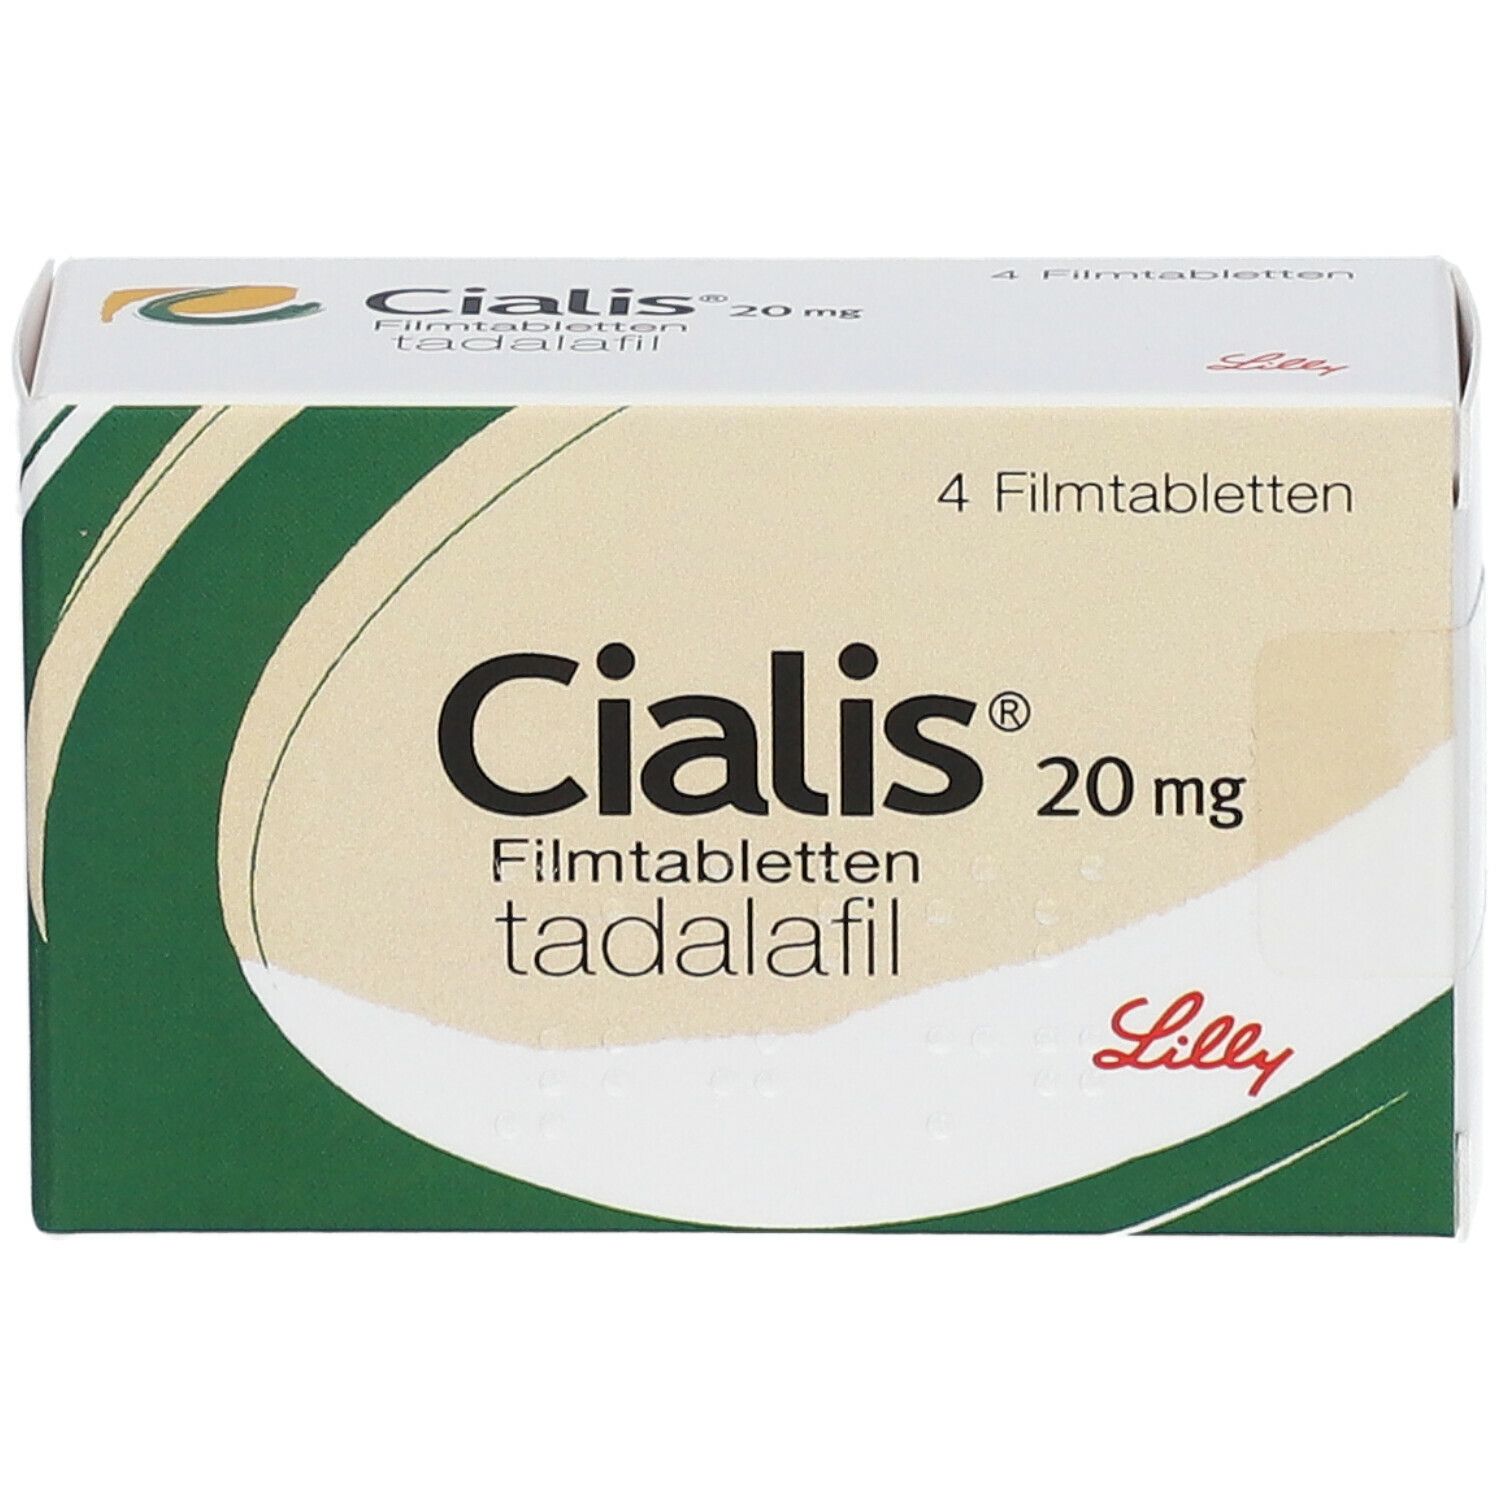 Cialis® 20 mg 4 St mit dem E-Rezept kaufen - SHOP APOTHEKE